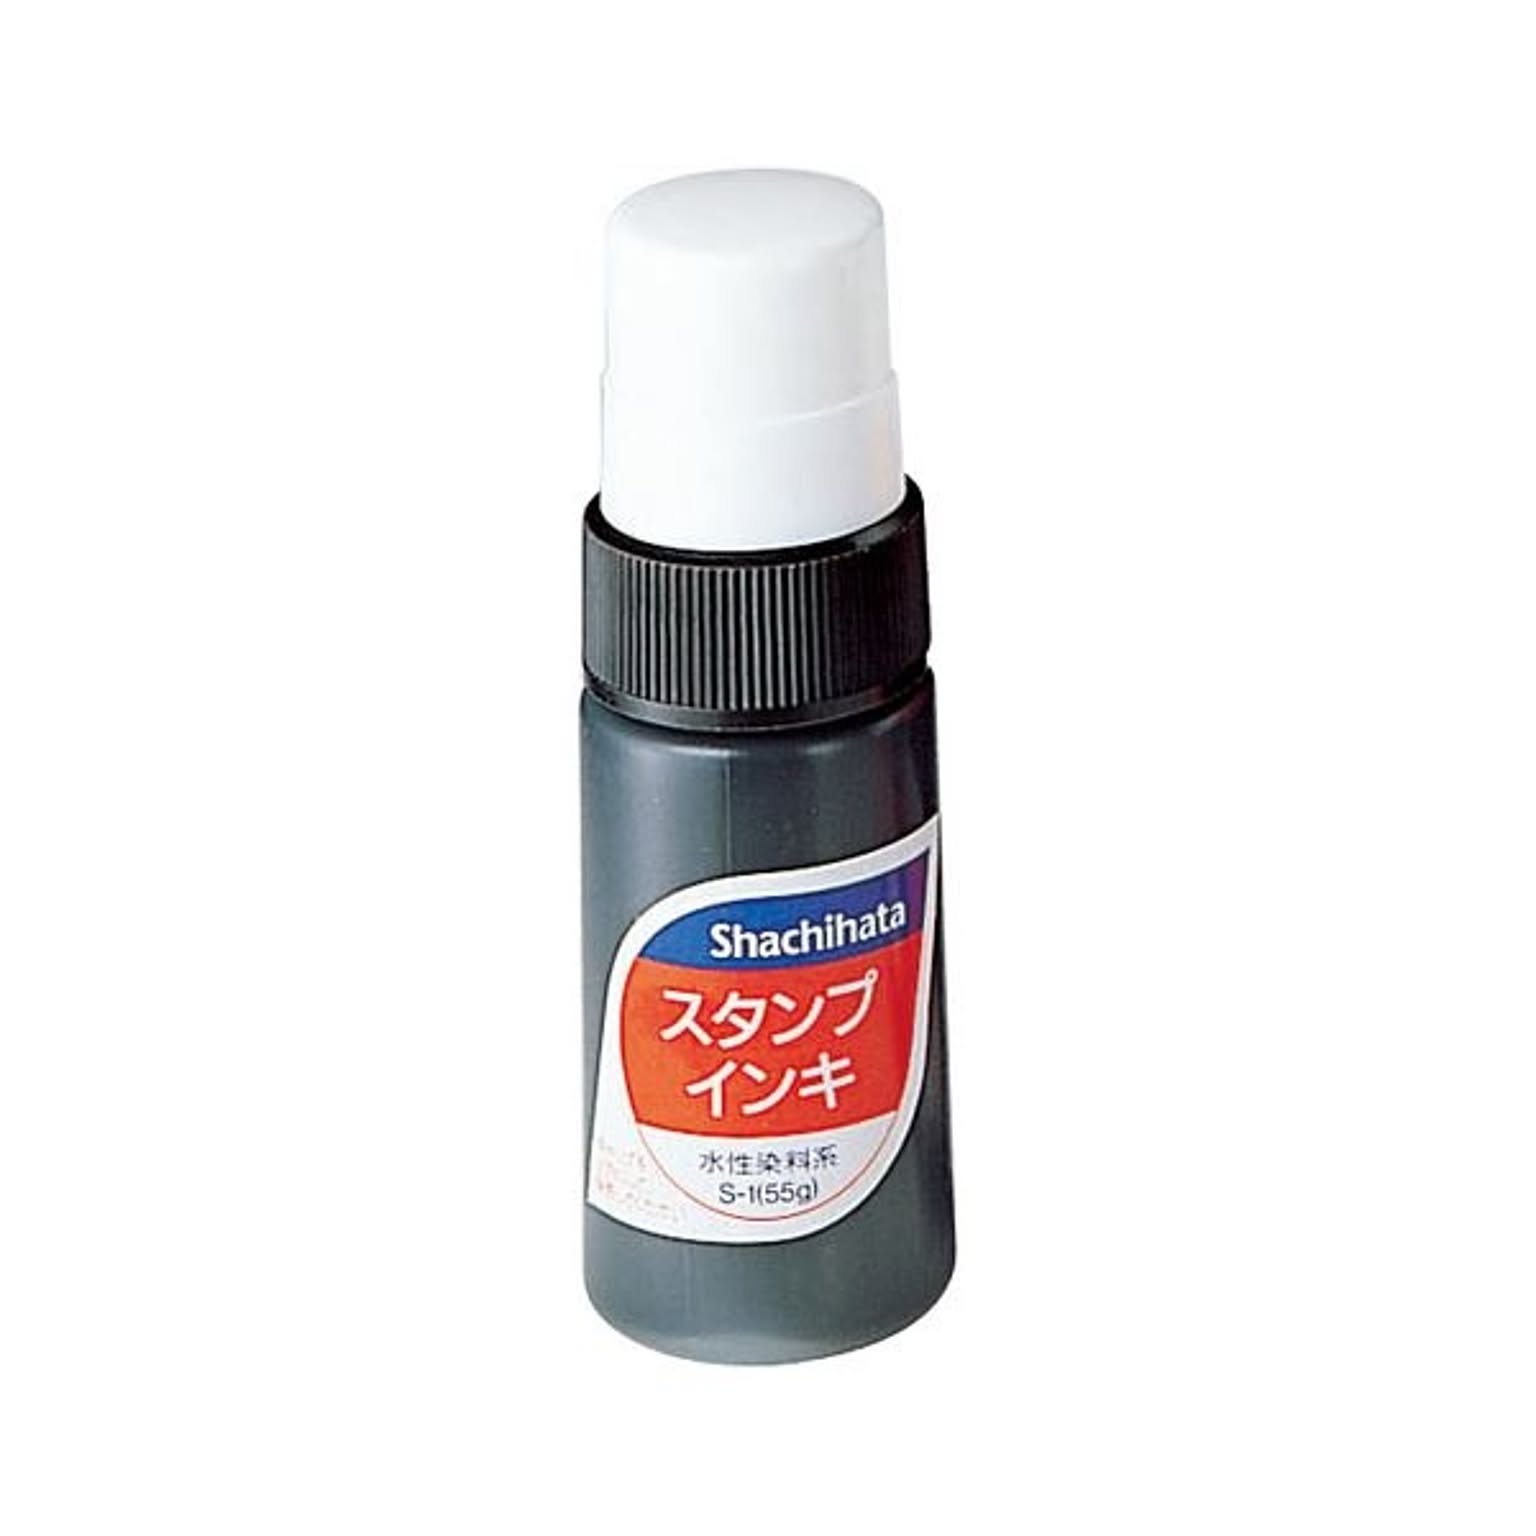 シヤチハタ スタンプインキ ゾルスタンプ台専用 小瓶 黒 S-1 1個 【×10セット】